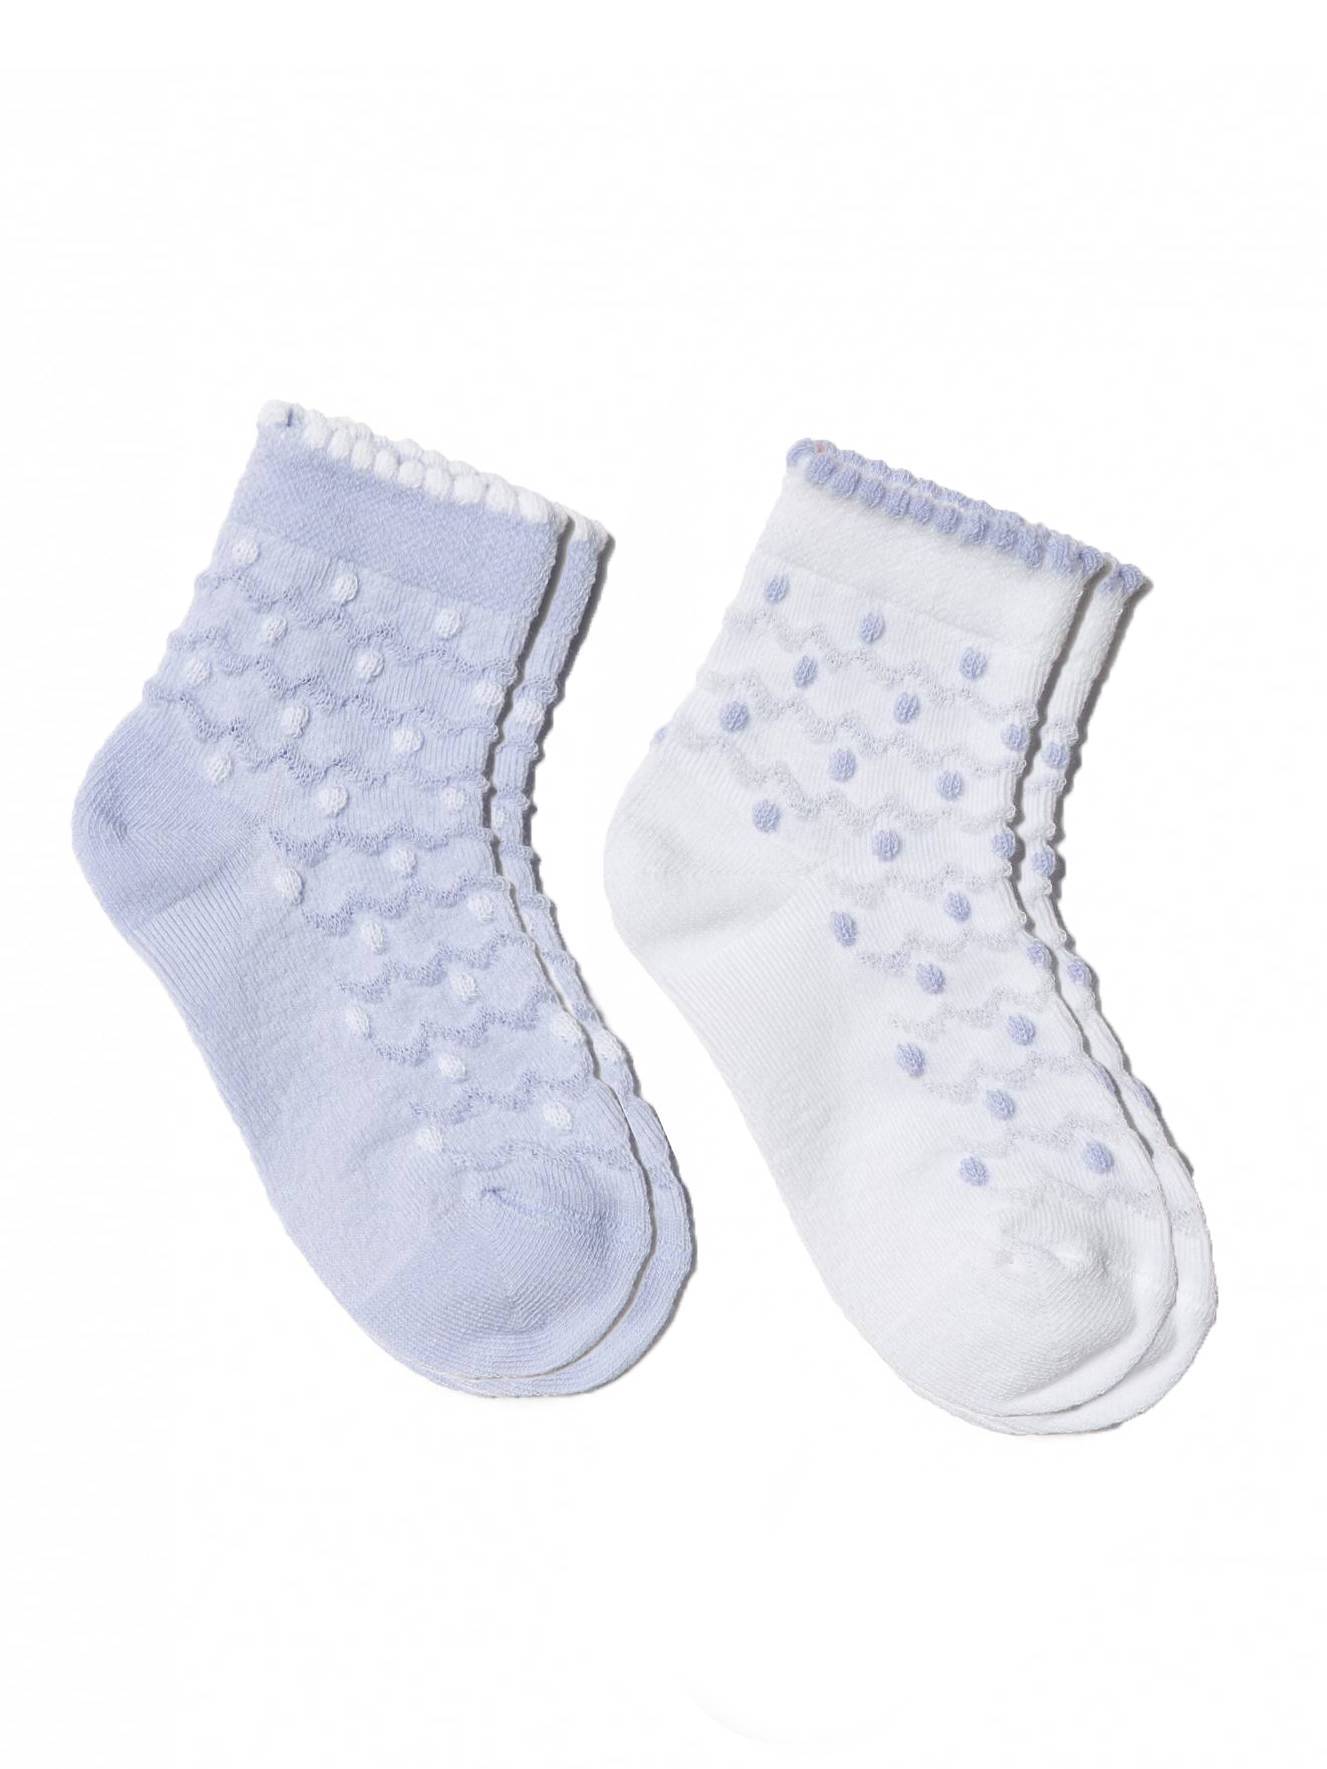 Жаккардовые носки TIP-TOP (2 пары) Conte белый-бледно-фиолетовый  